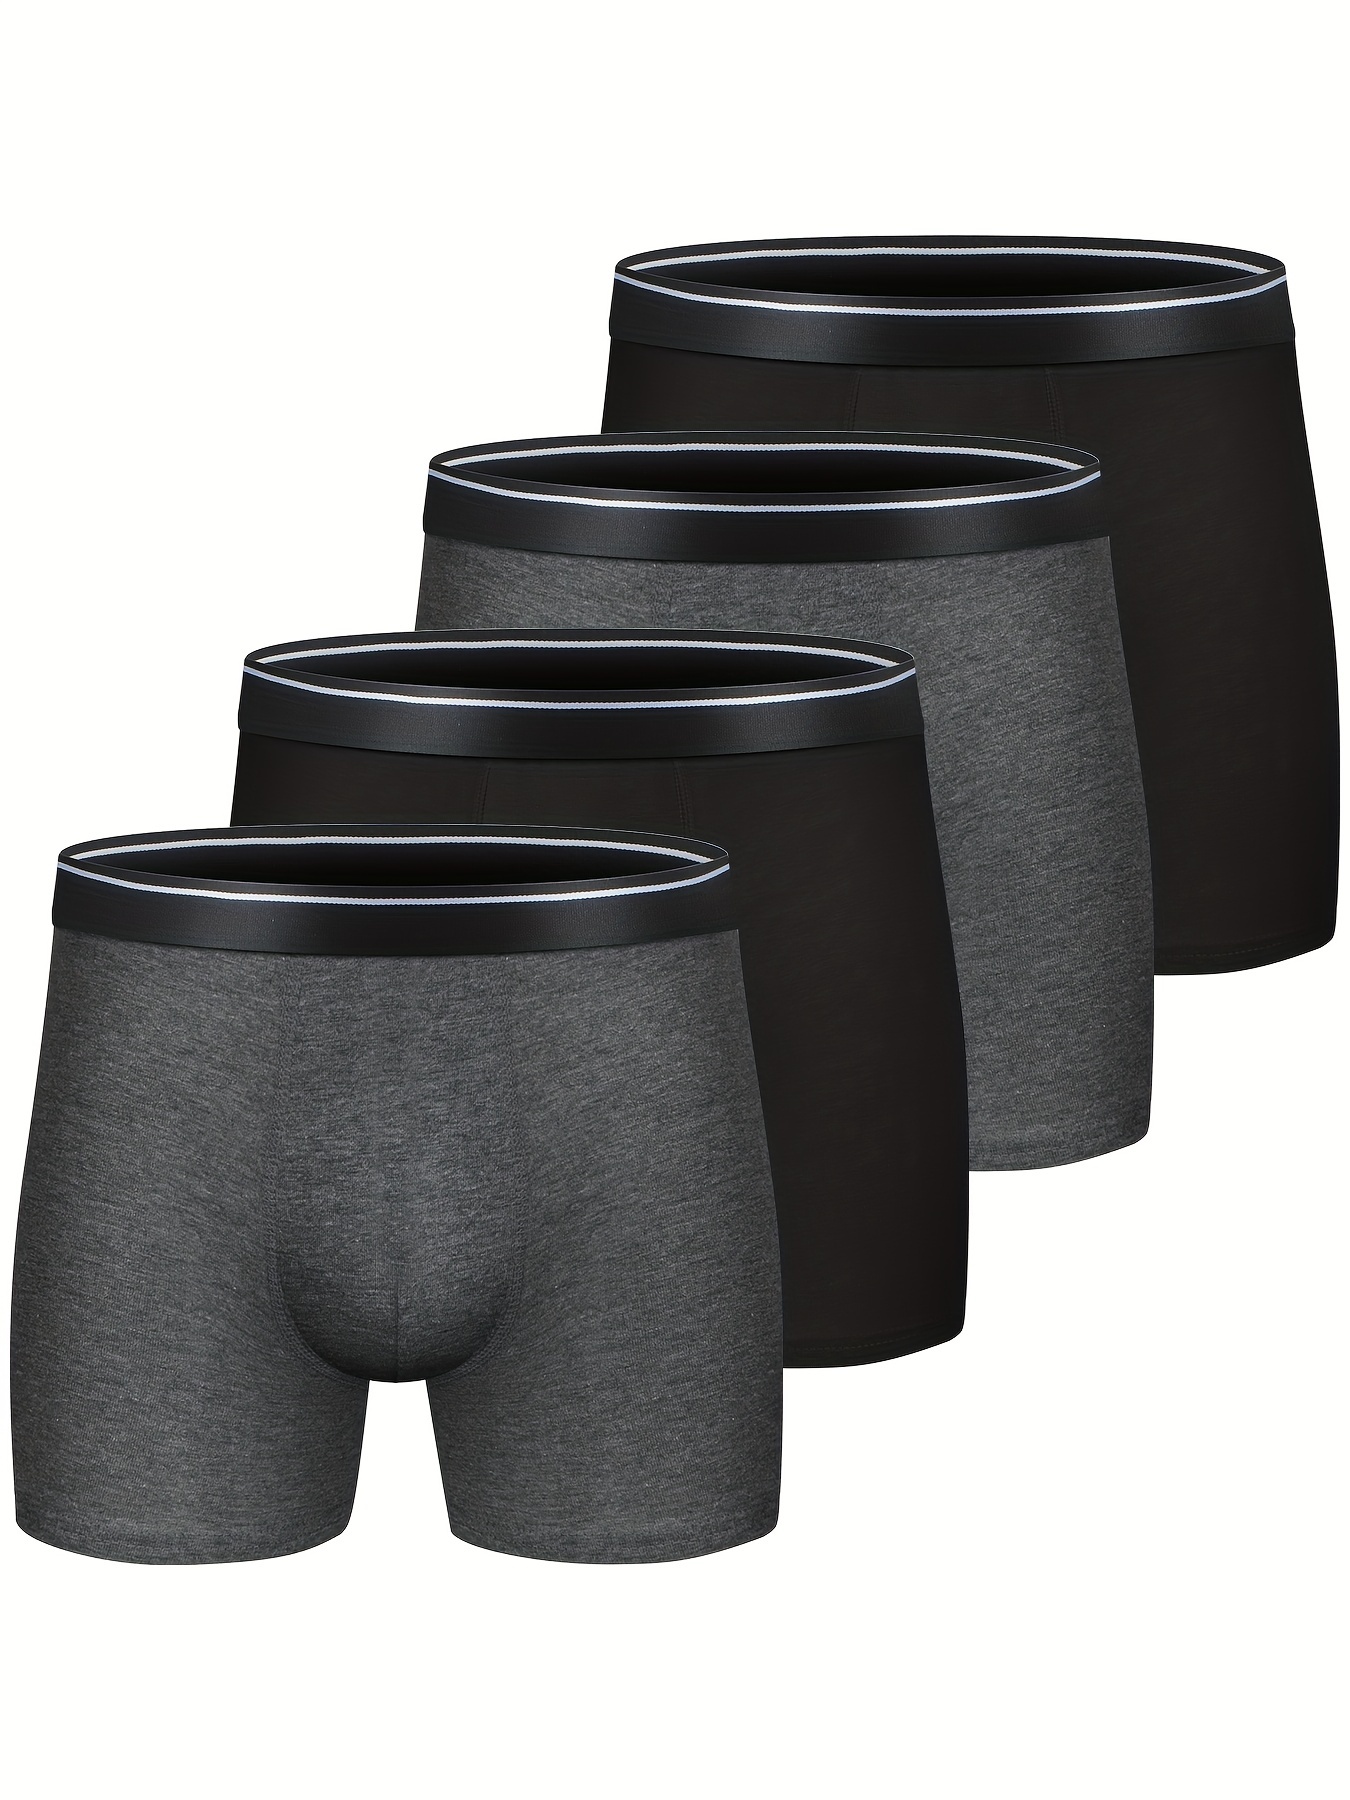 Brief Solid Neo Sccot ( Mens Undergarment, Jock .Strap , Underwear